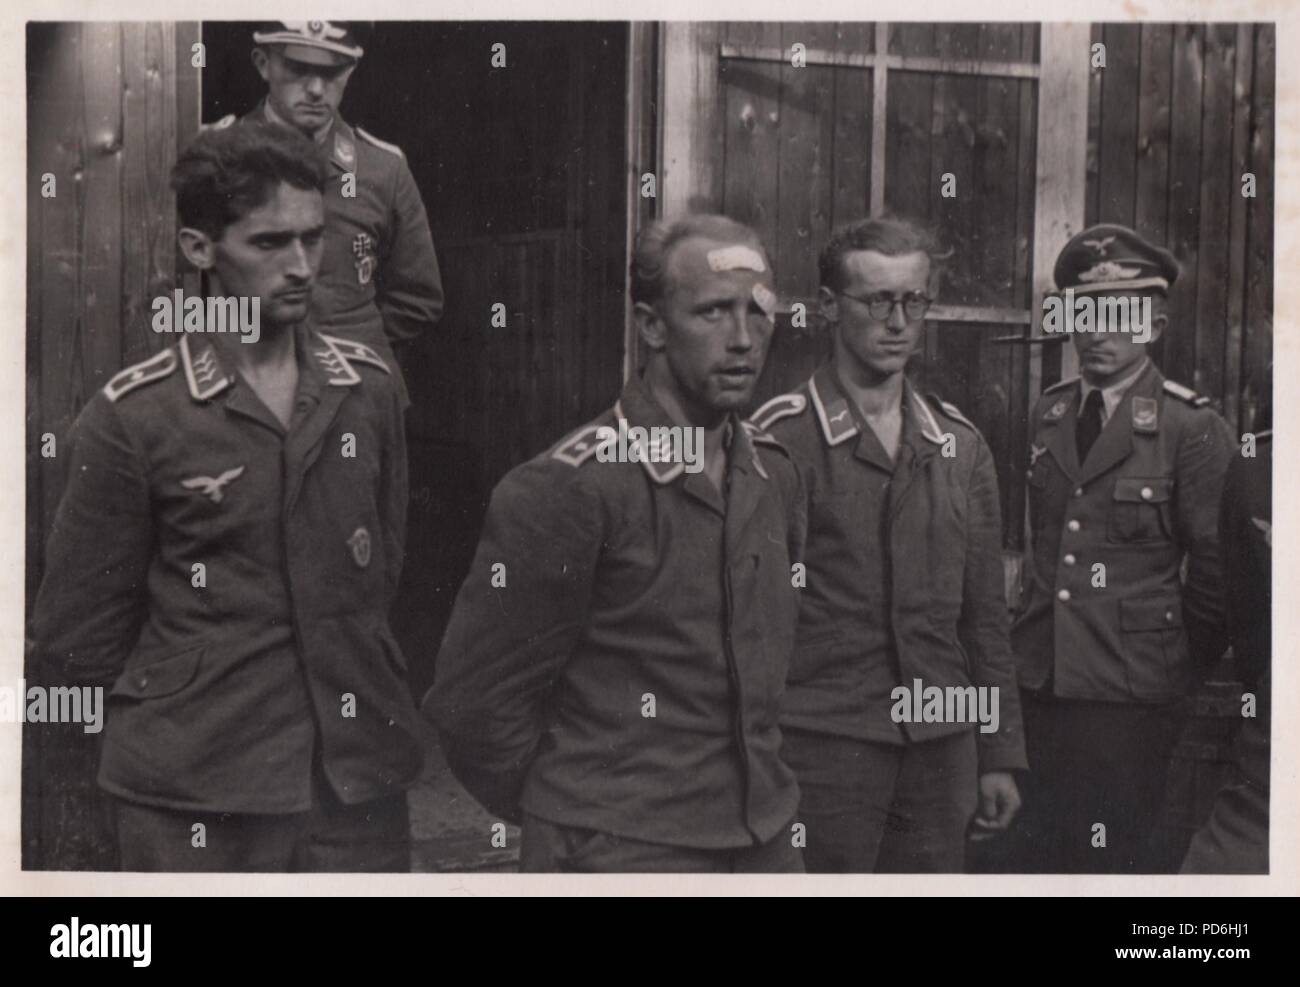 Immagine da l'album fotografico di Oberleutnant Oscar Müller di Kampfgeschwader 1: Il 27 giugno 1941 Junkers Ju 88A-5 V4+SU (Werk. No. 4296) 5./KG 1, è stato segnalato come perso durante una missione a Riga. Unteroffizier Friedrich Leibold (aria Gunner) è stato ucciso in azione ma il resto dell'equipaggio, pilota Oberfeldwebel Agosto Wiese (in centro con la testa fasciata), osservatore Feldwebel Martin affrettare (sulla sinistra) e l'operatore radio Unteroffizier Armin Wuigk (con occhiali), tornato in otto giorni. Qui l'equipaggio hanno appena cambiato in fresco e le uniformi e stanno parlando al Luftwaffe ufficiali. Foto Stock